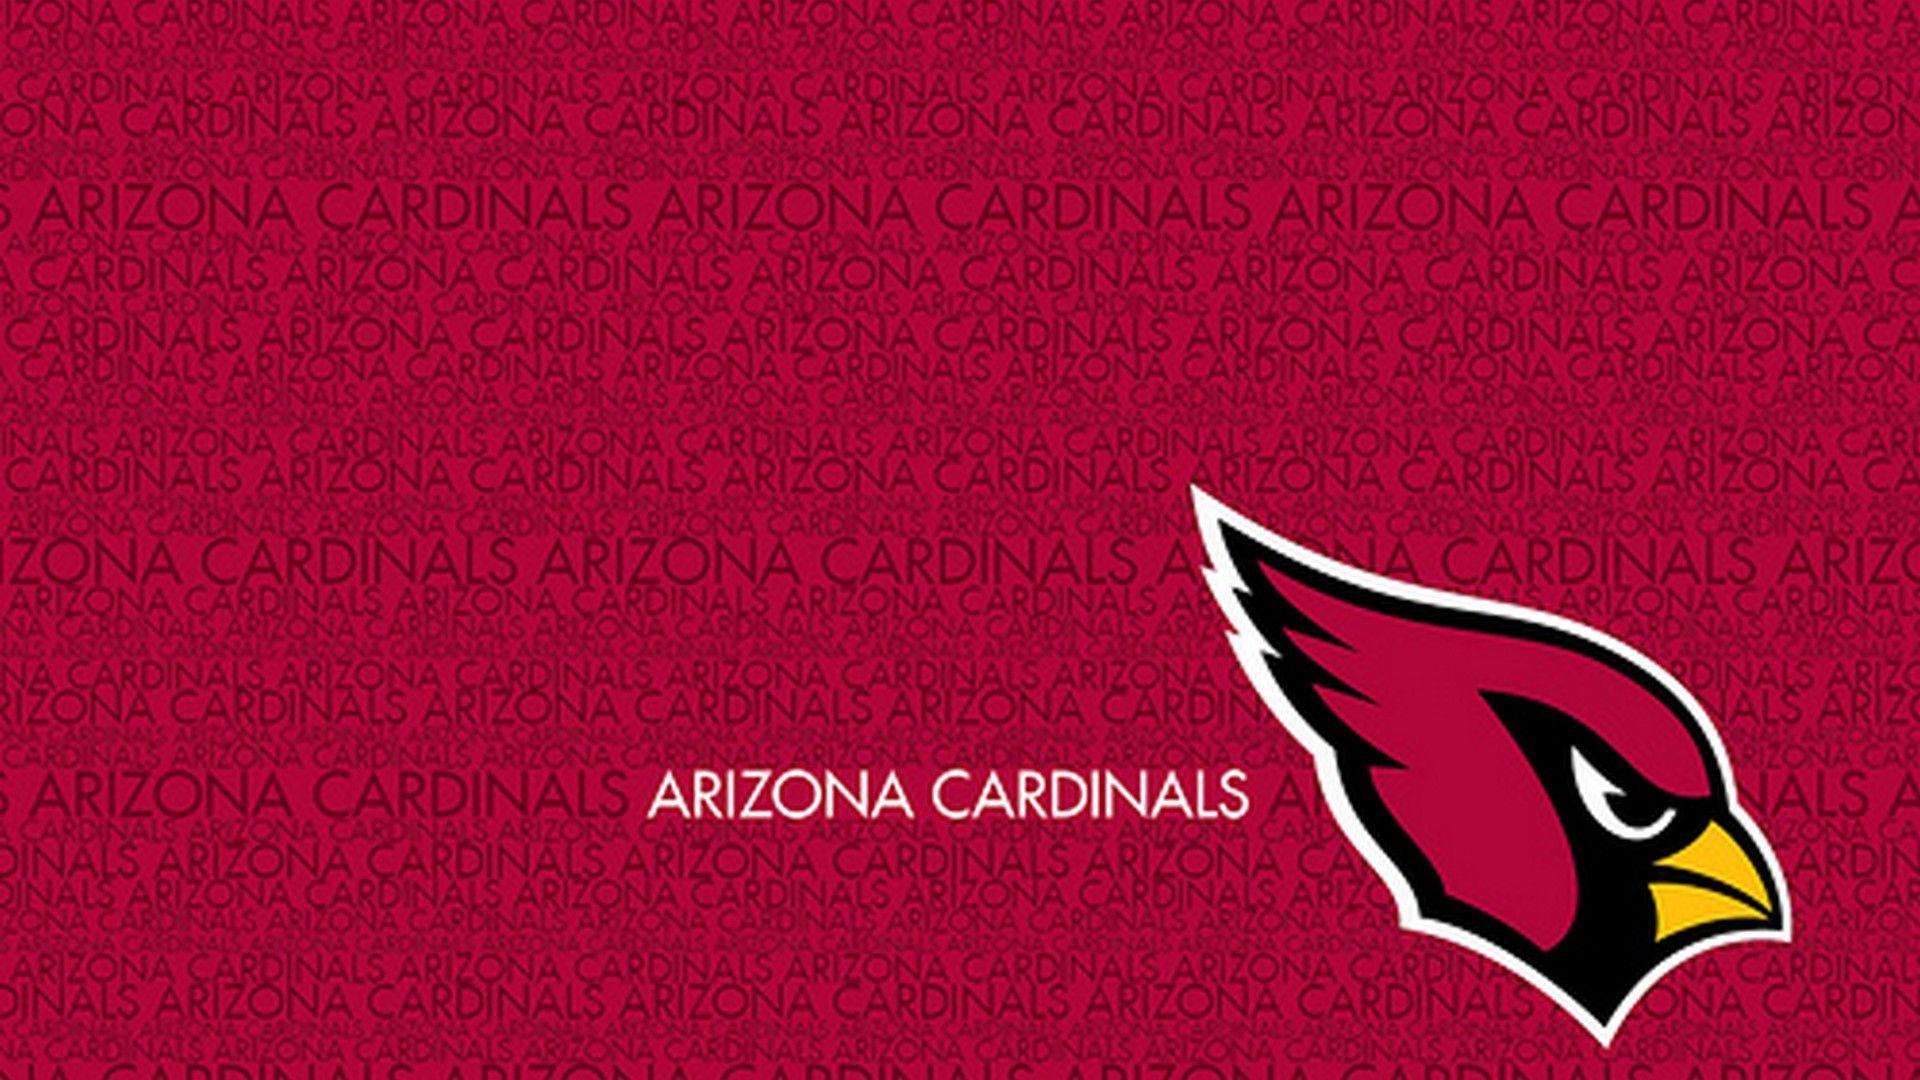 Arizona Cardinals For PC Wallpaper. Cardinals, Football